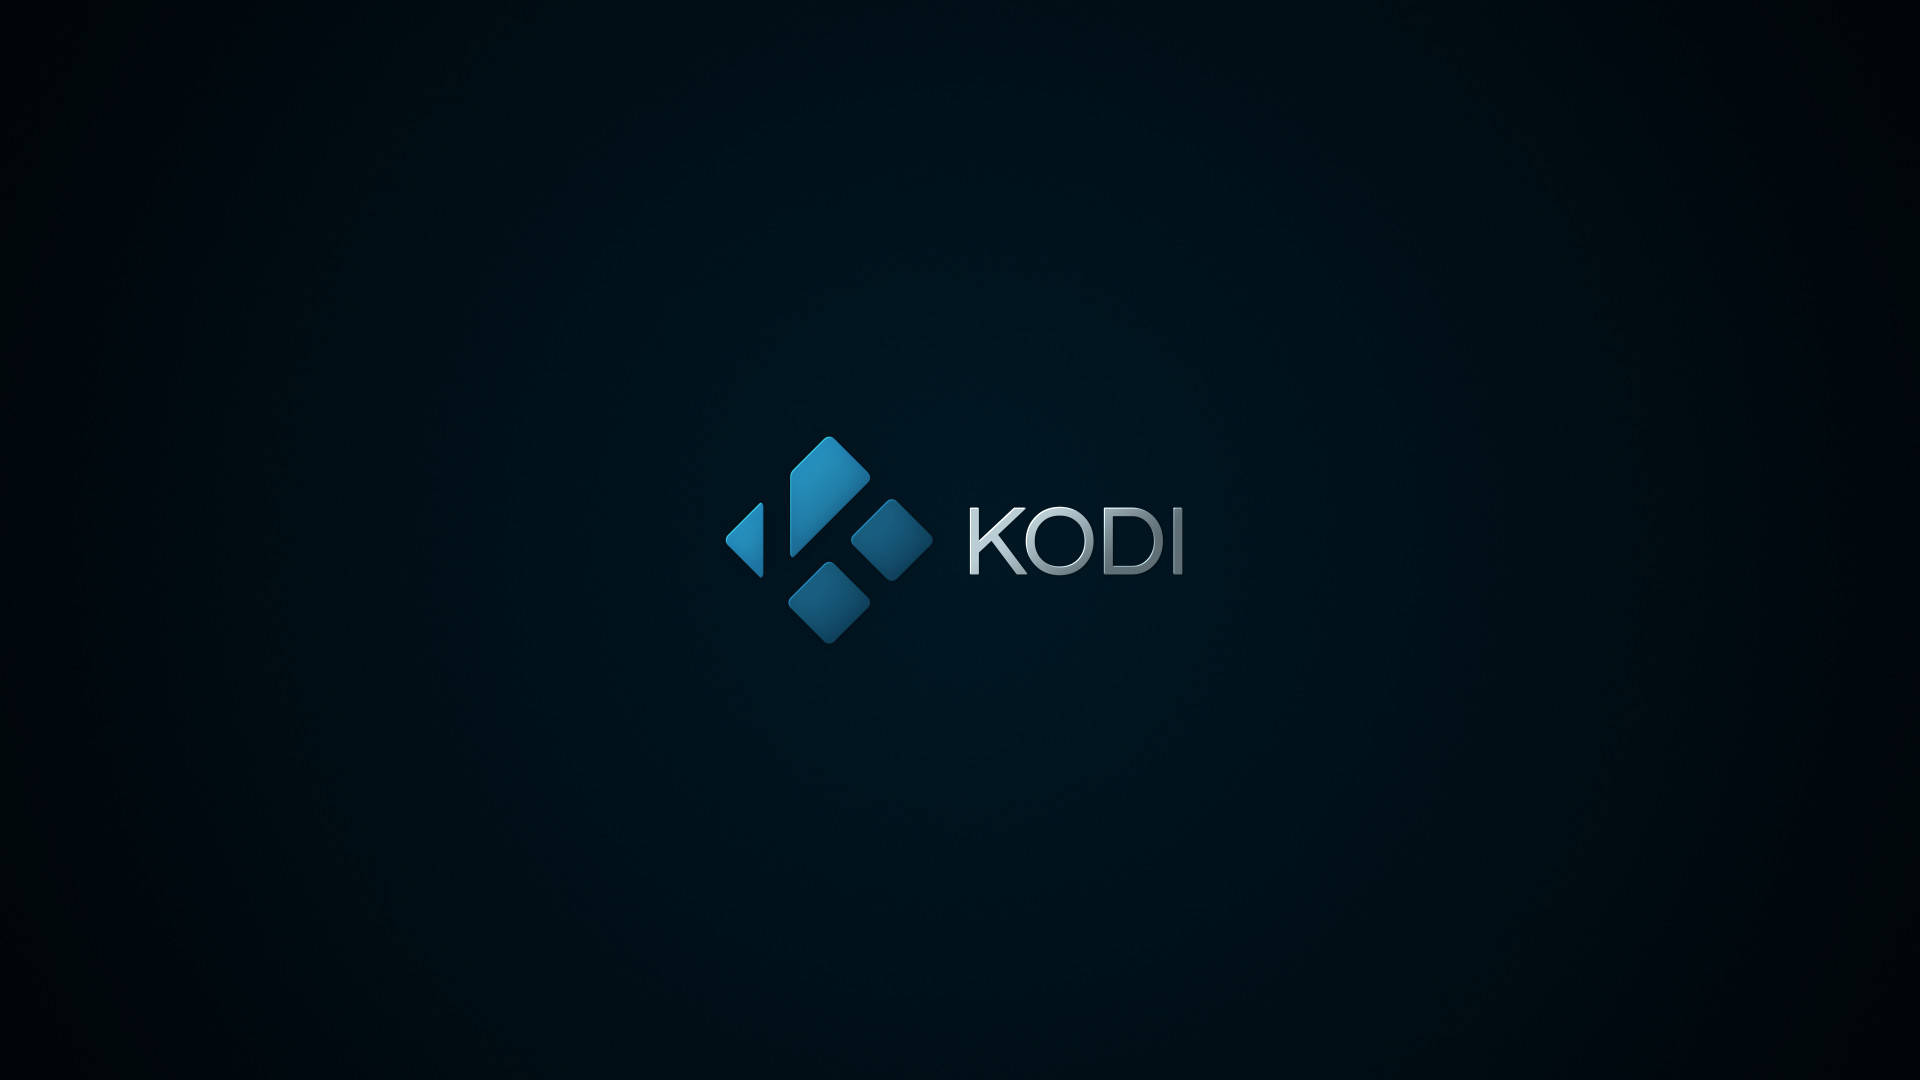 Kodi Wallpaper